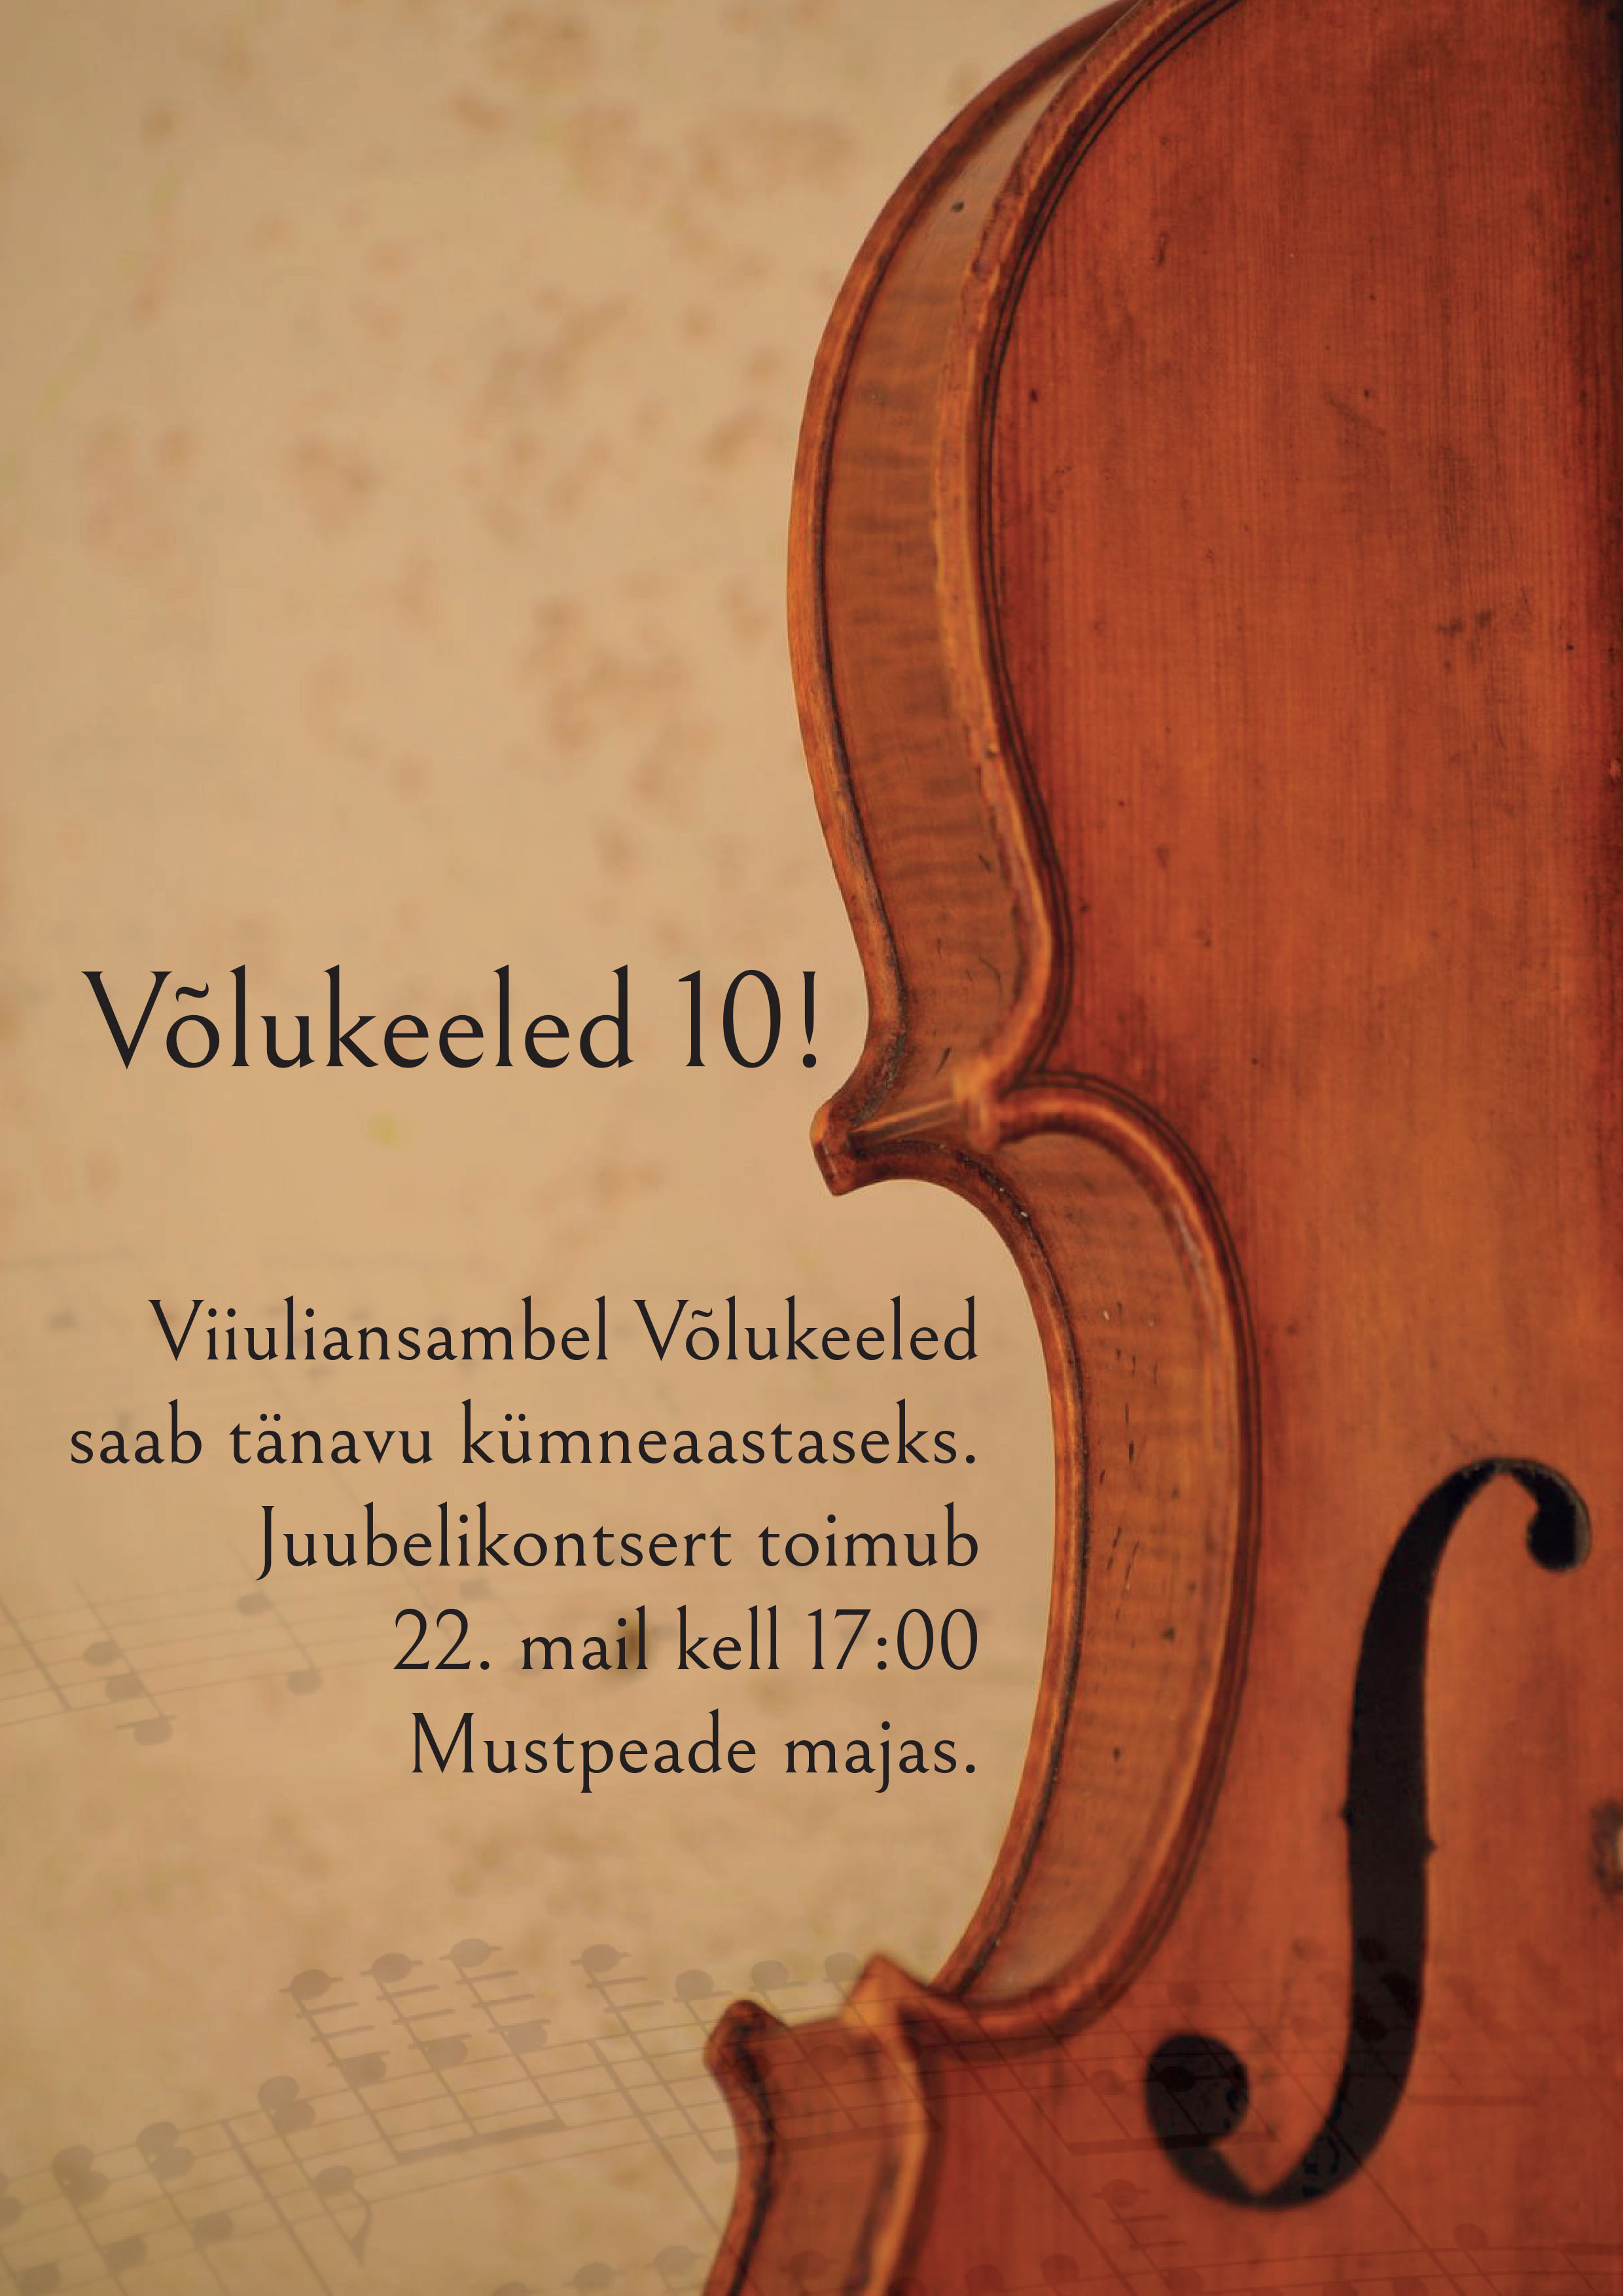 VHK-laste viiuliansambel Võlukeeled